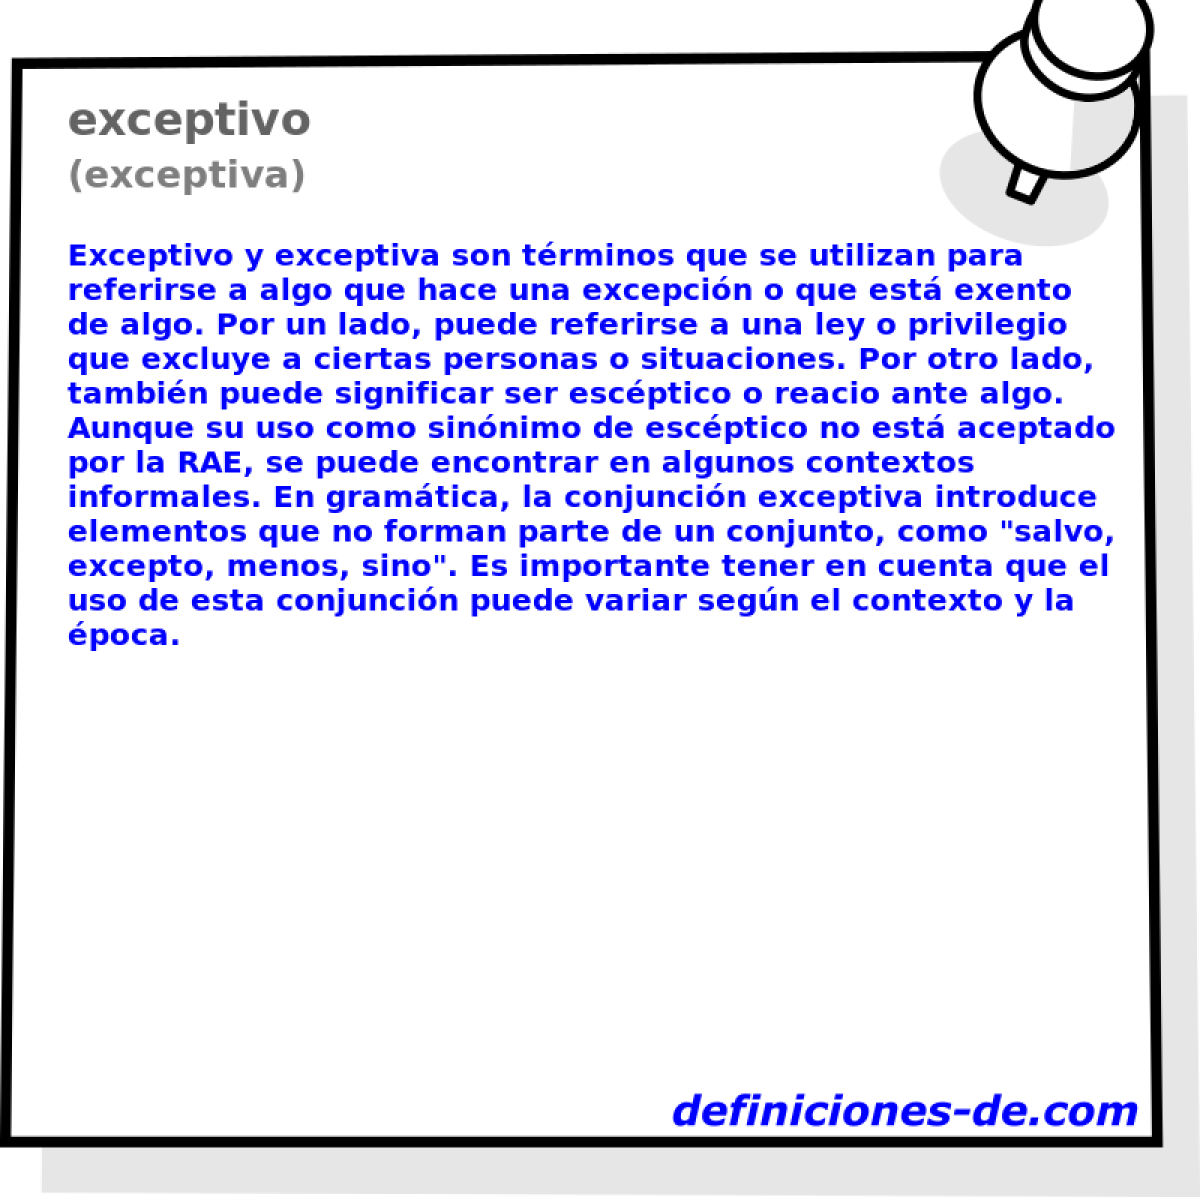 exceptivo (exceptiva)